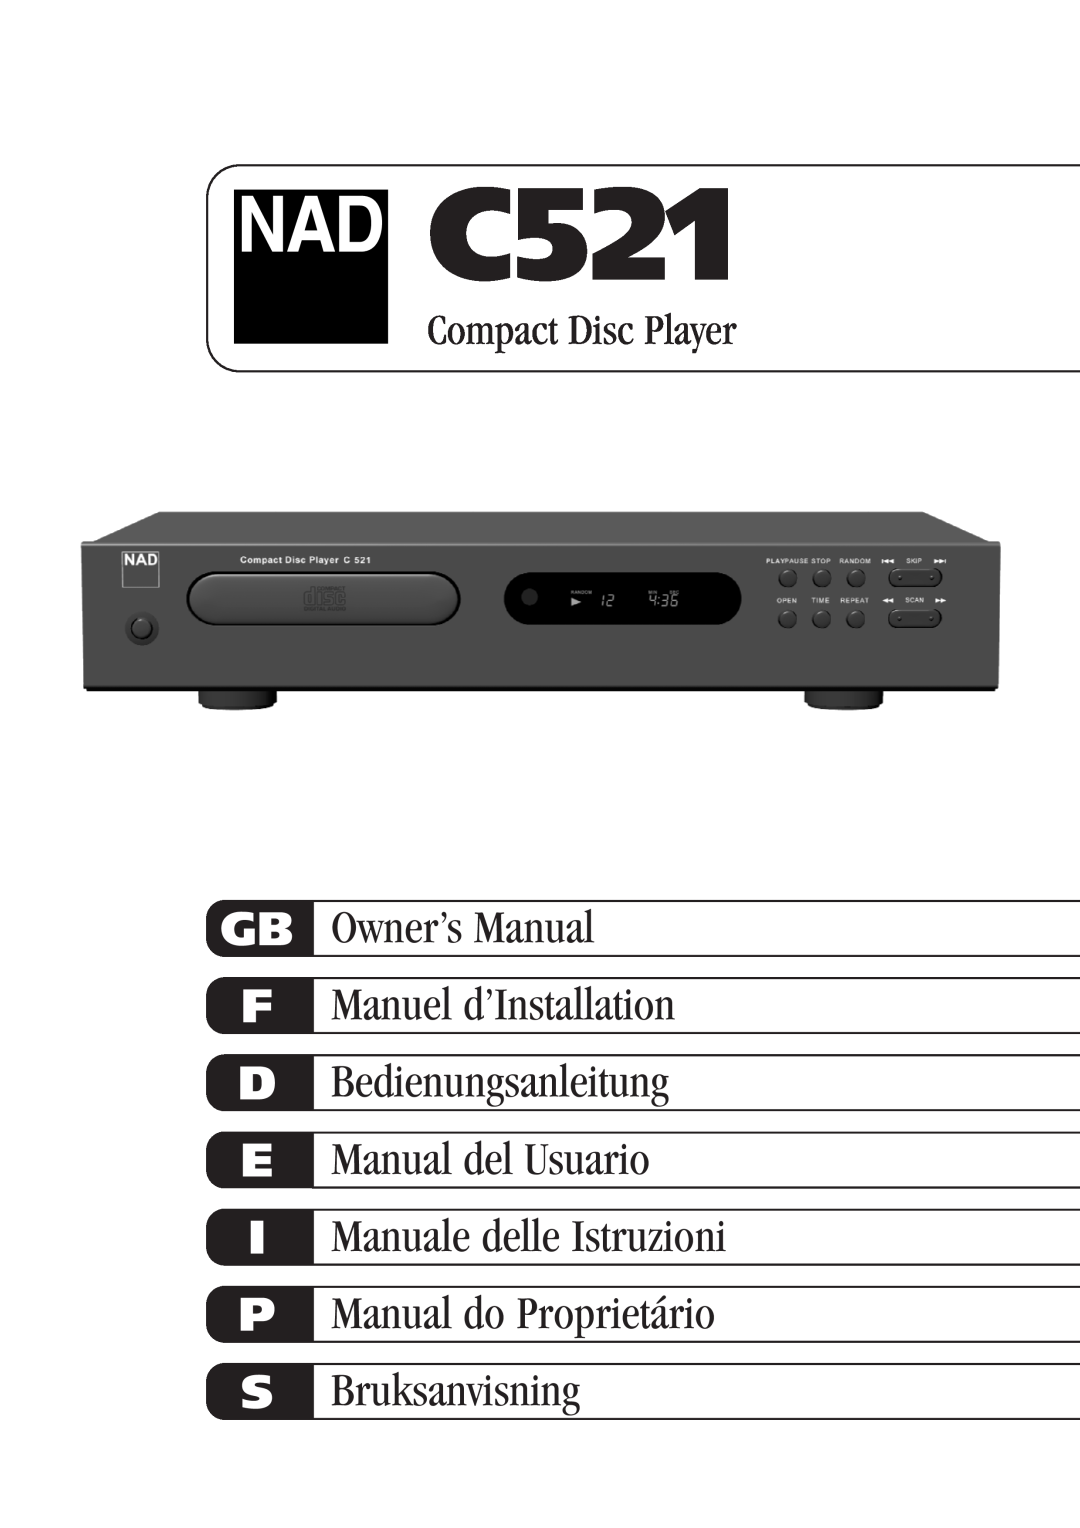 NAD C521 owner manual Gb F D E I P S, Owner’s Manual Manuel d’Installation, Bedienungsanleitung Manual del Usuario 